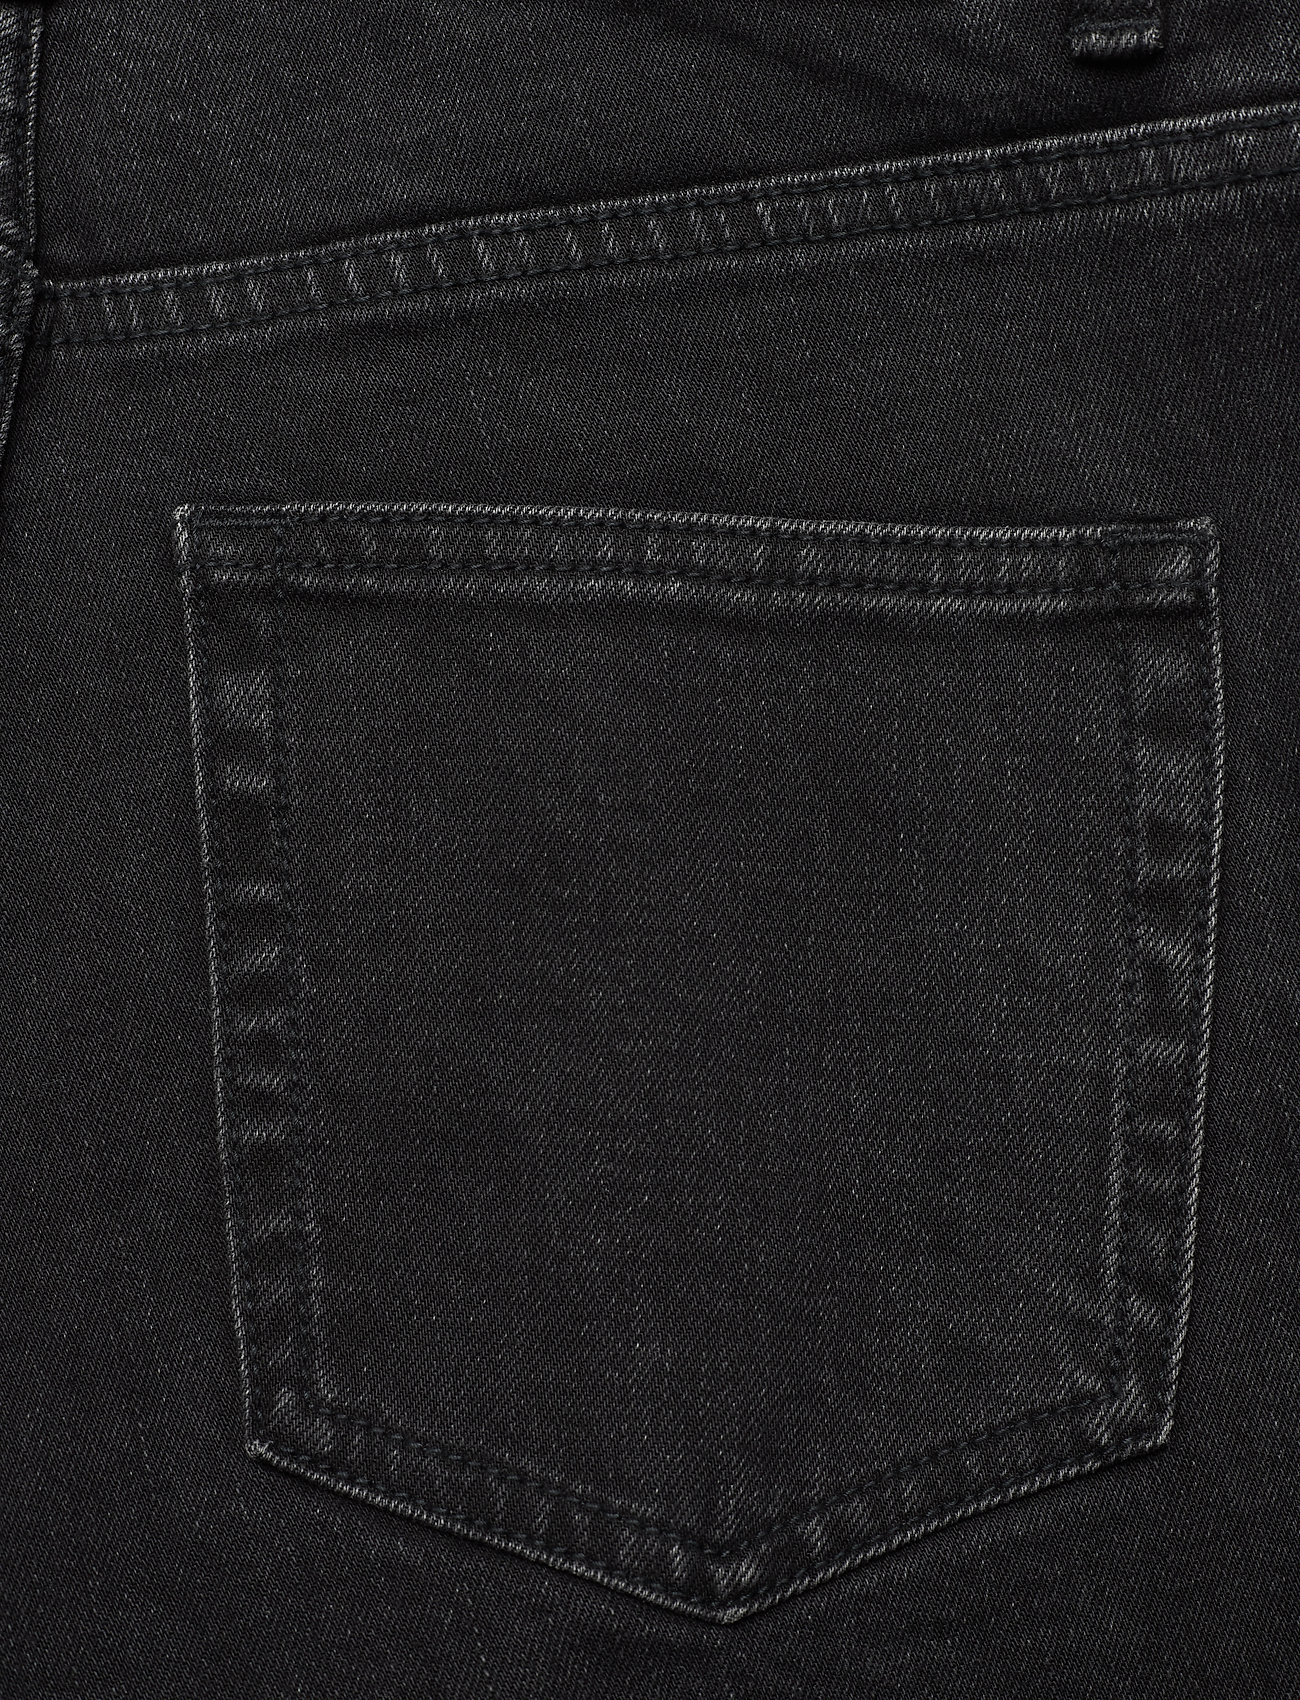 Stylein - KATIE DENIM - slim jeans - black - 5